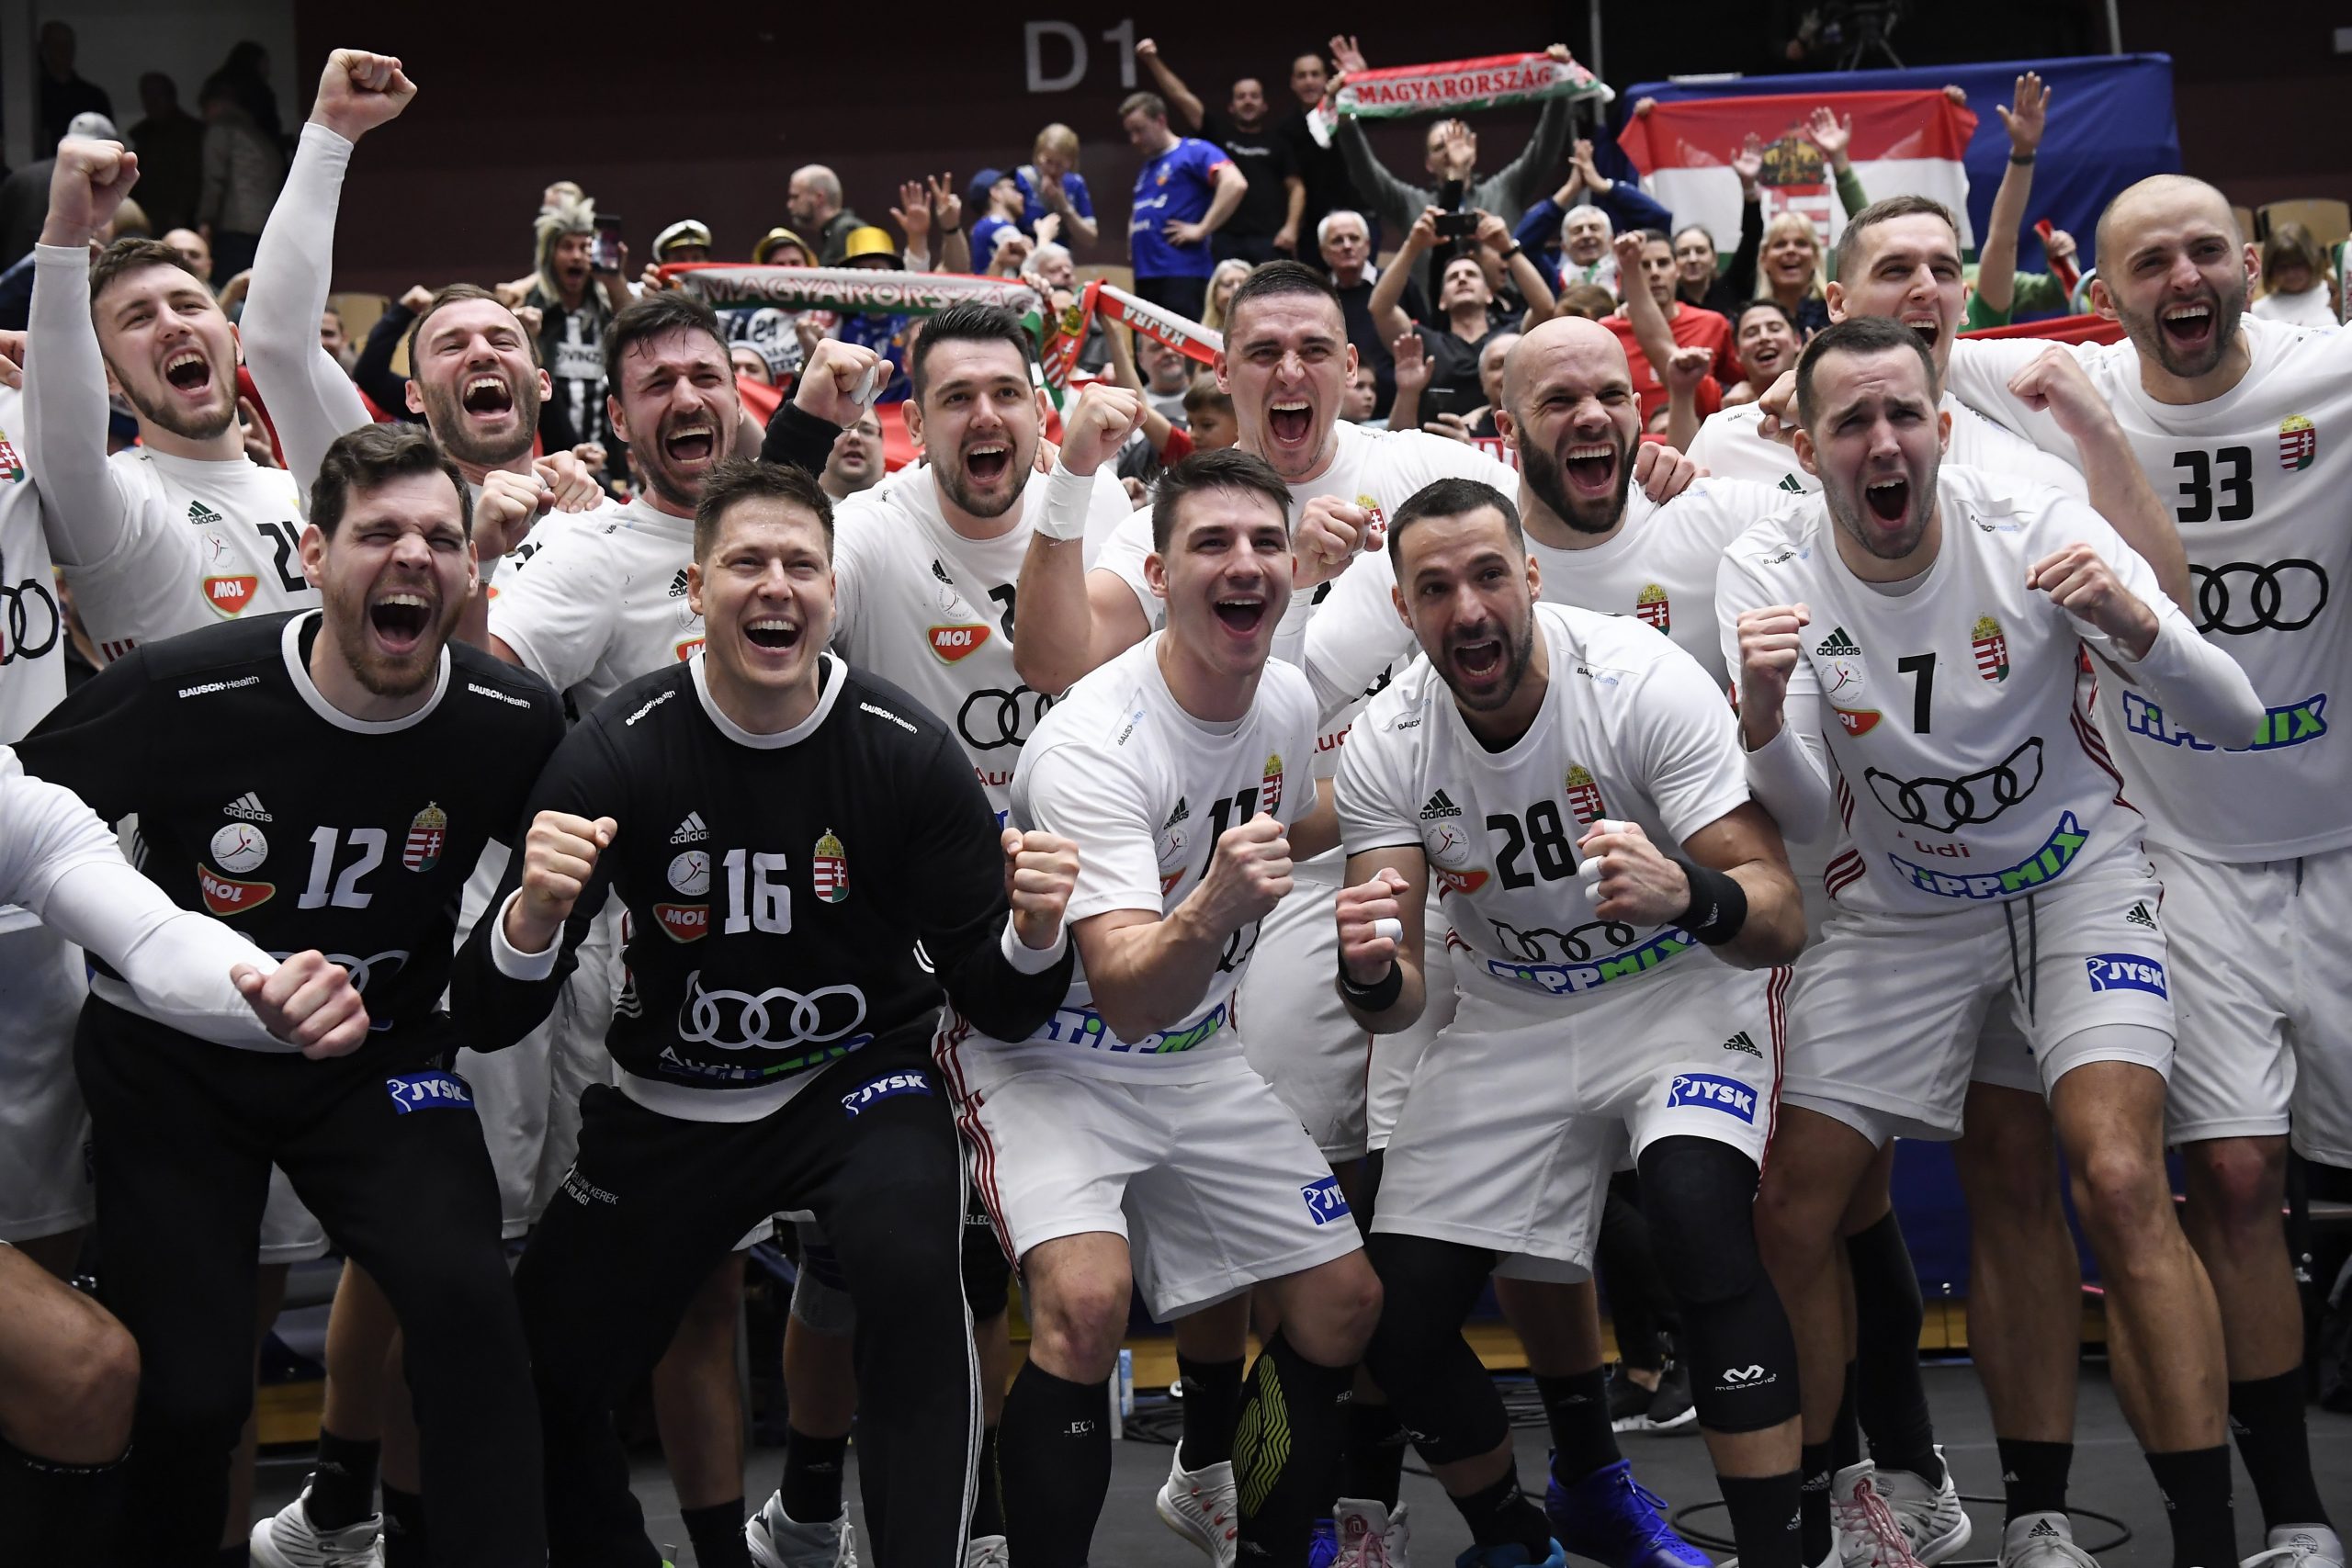 Ungarisches Handballwunder bei der Weltmeisterschaft